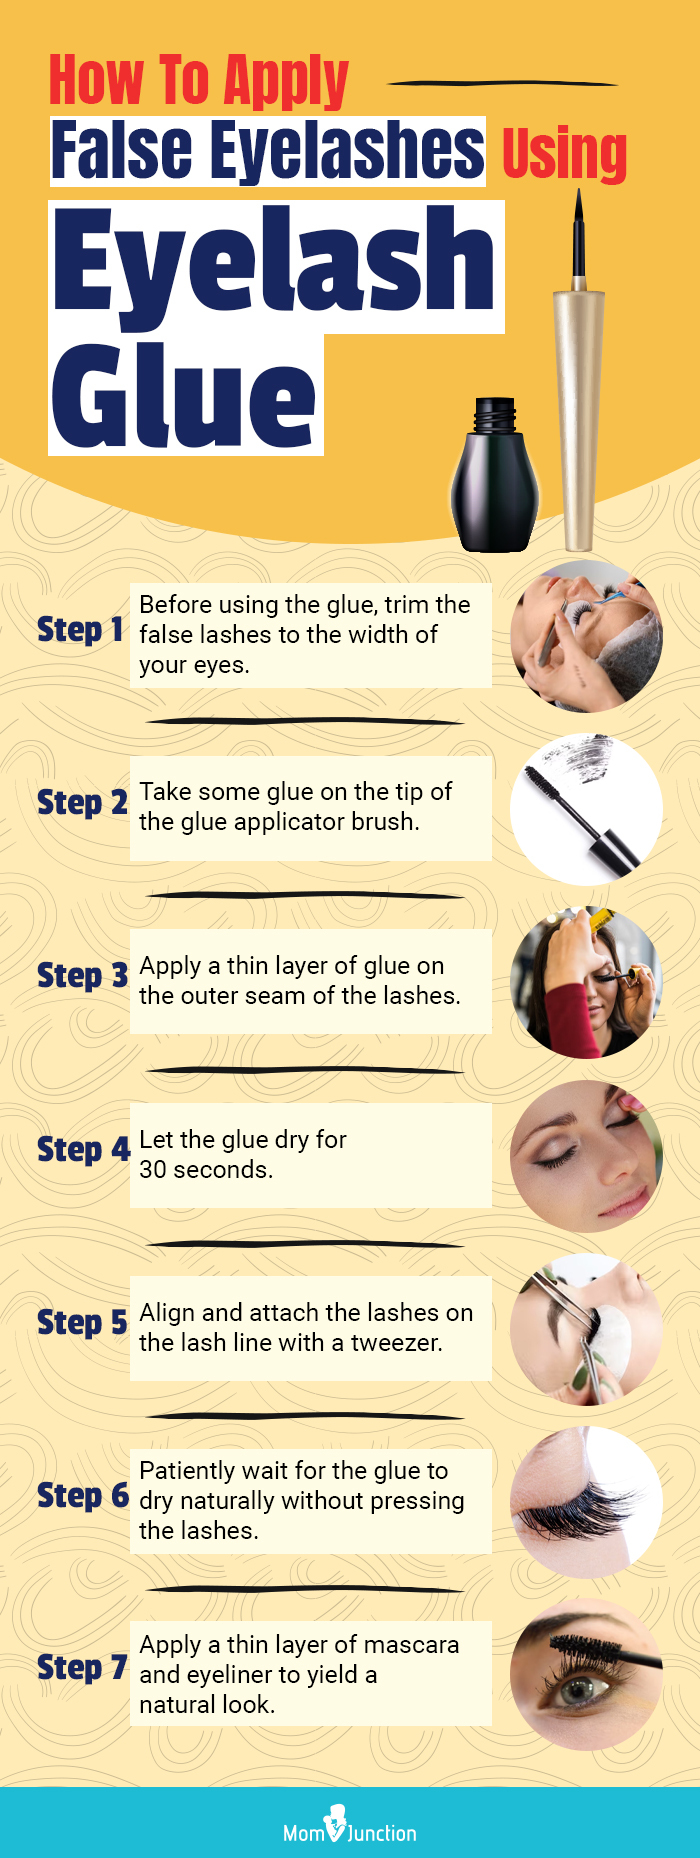 Steps Involved In Applying False Eyelashes Using Eyelash Glue (infographic)